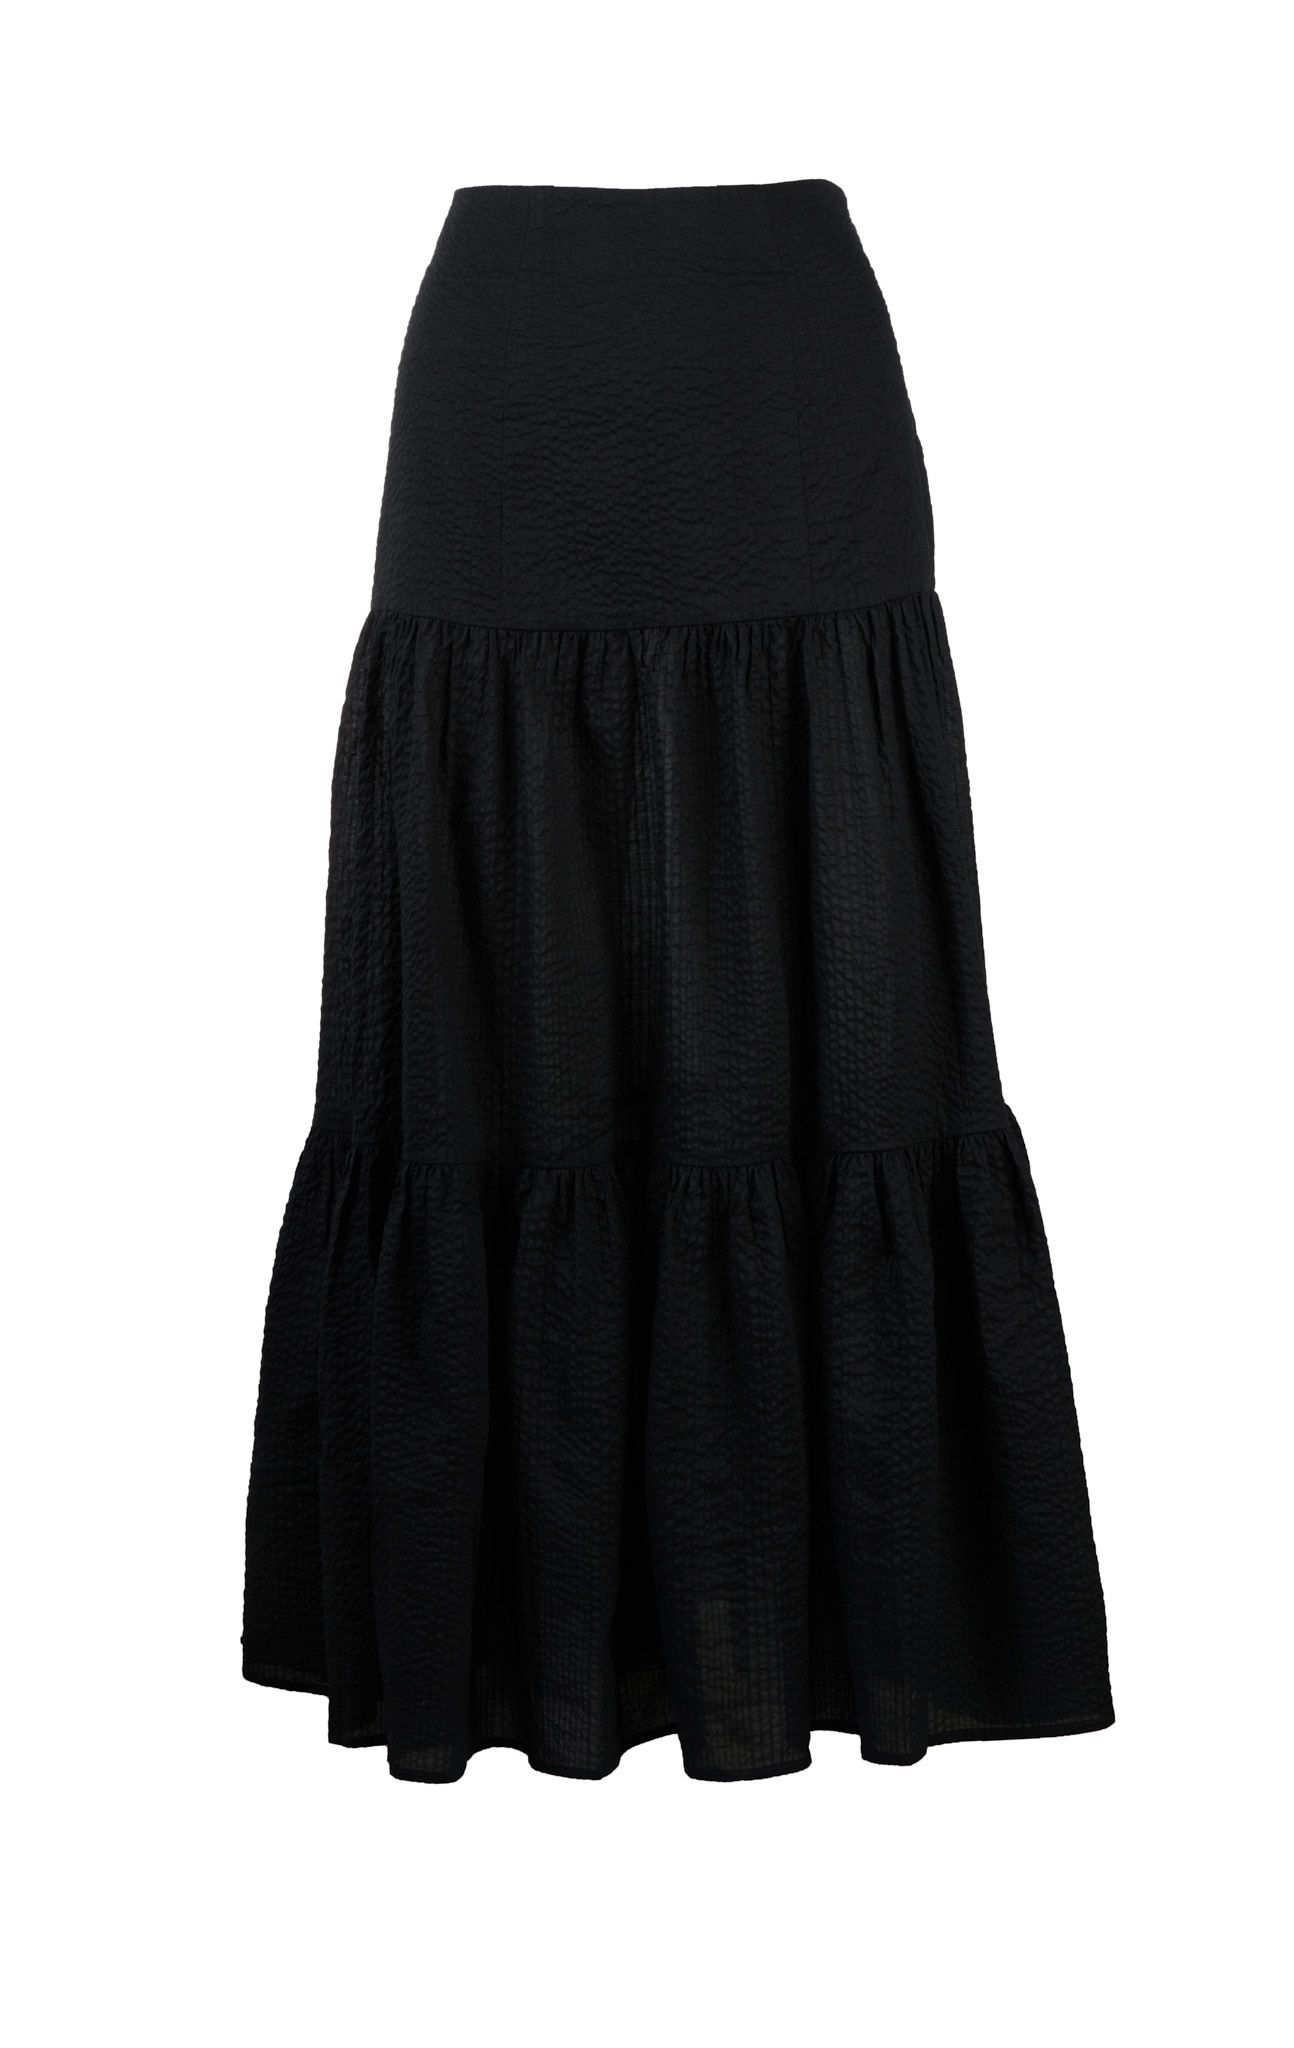 Palm Desert Skirt in Black